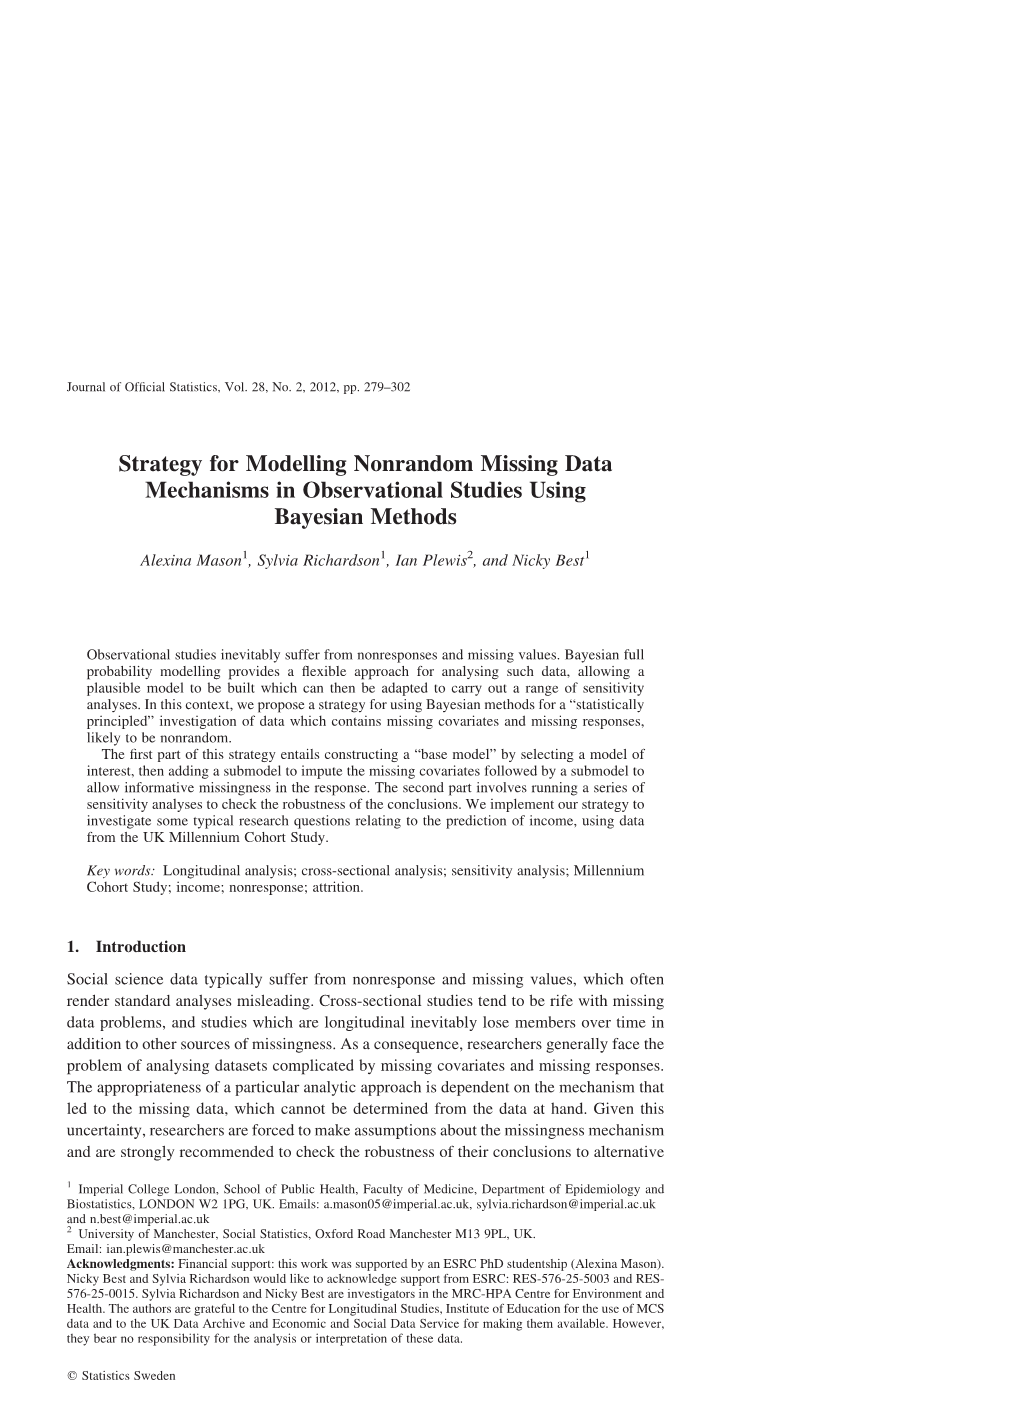 Strategy for Modelling Nonrandom Missing Data Mechanisms in Observational Studies Using Bayesian Methods